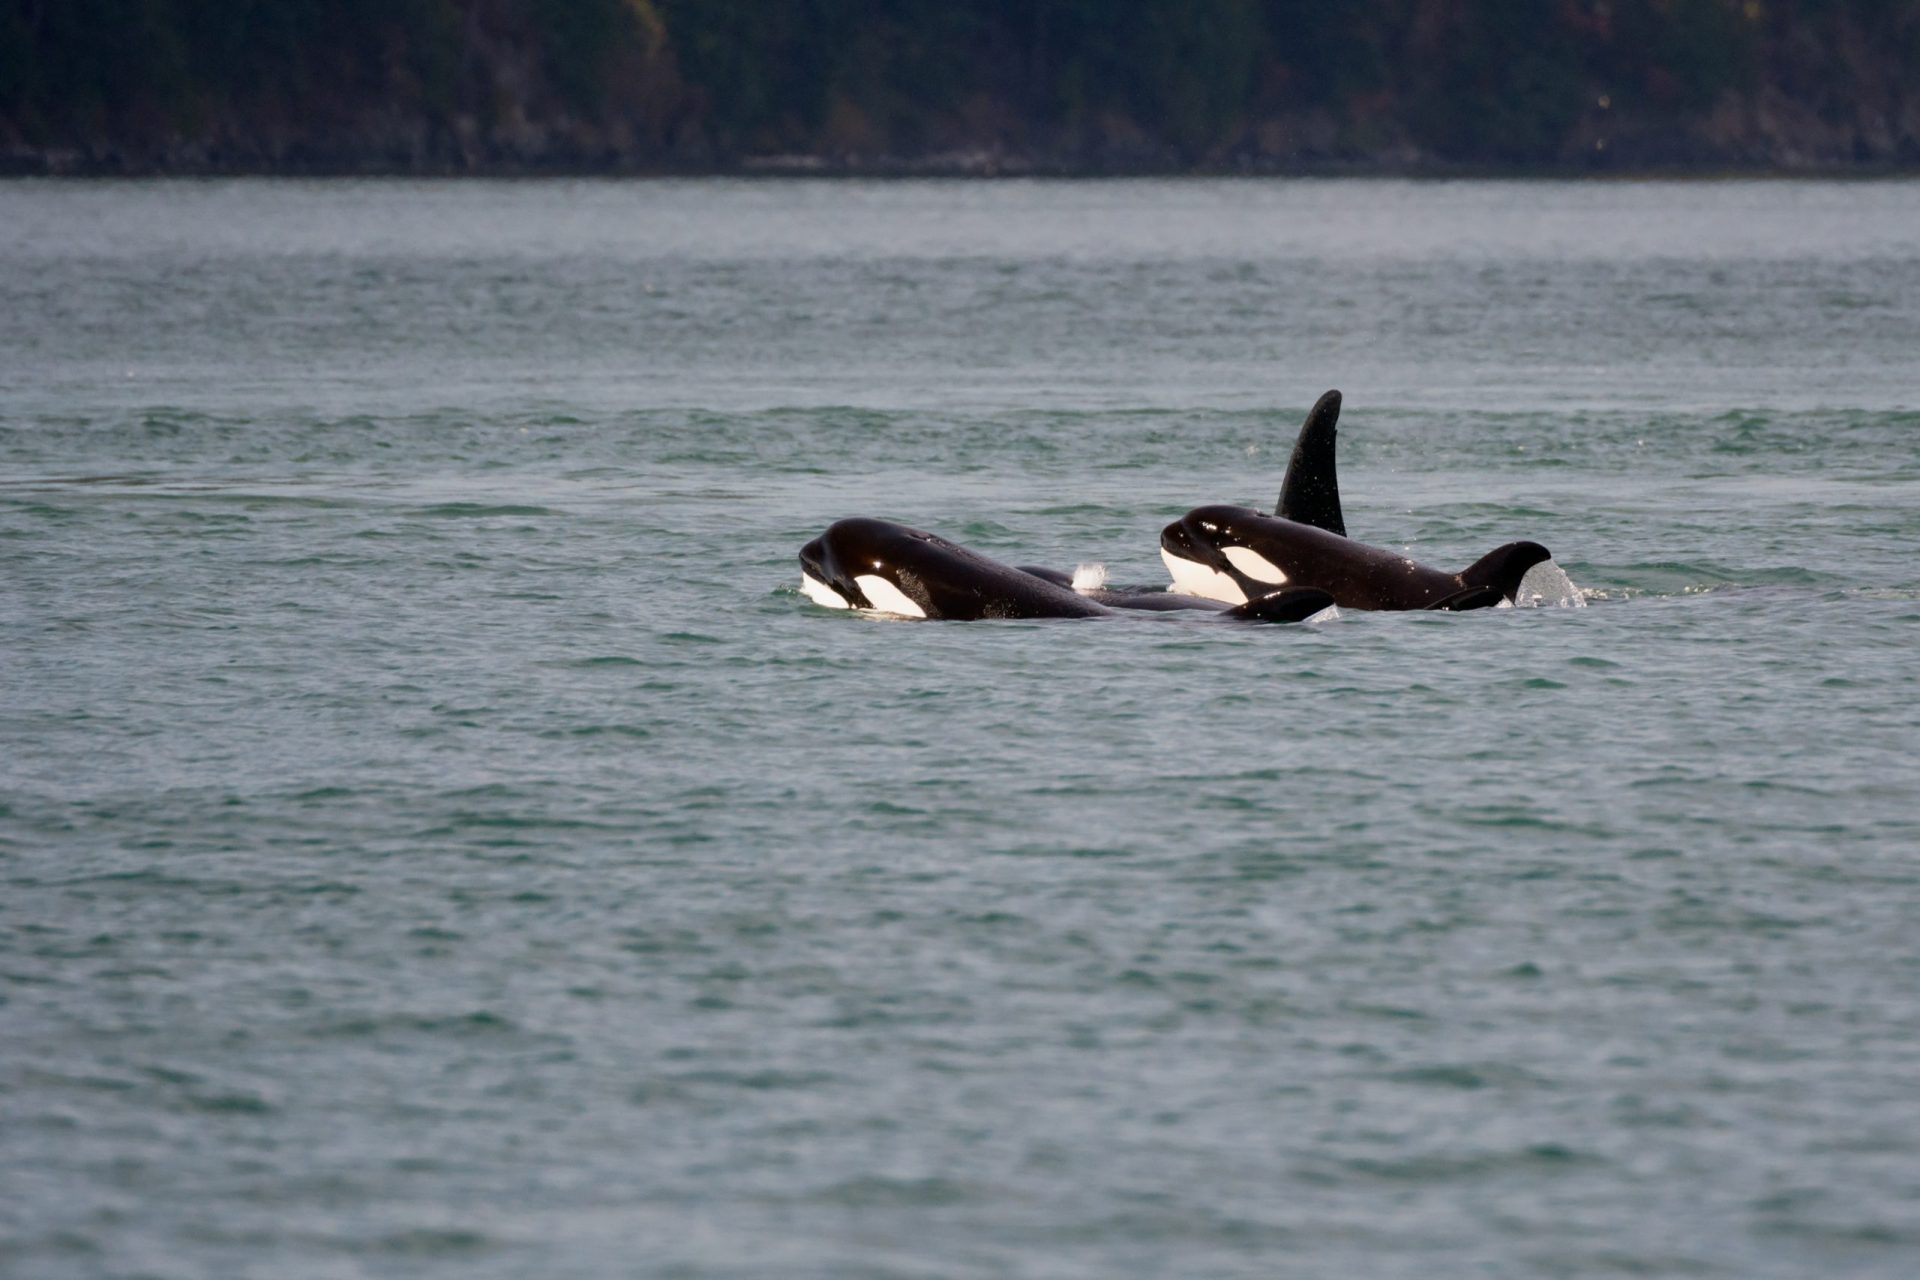 &#8220;As orcas são animais muito curiosos&#8221;